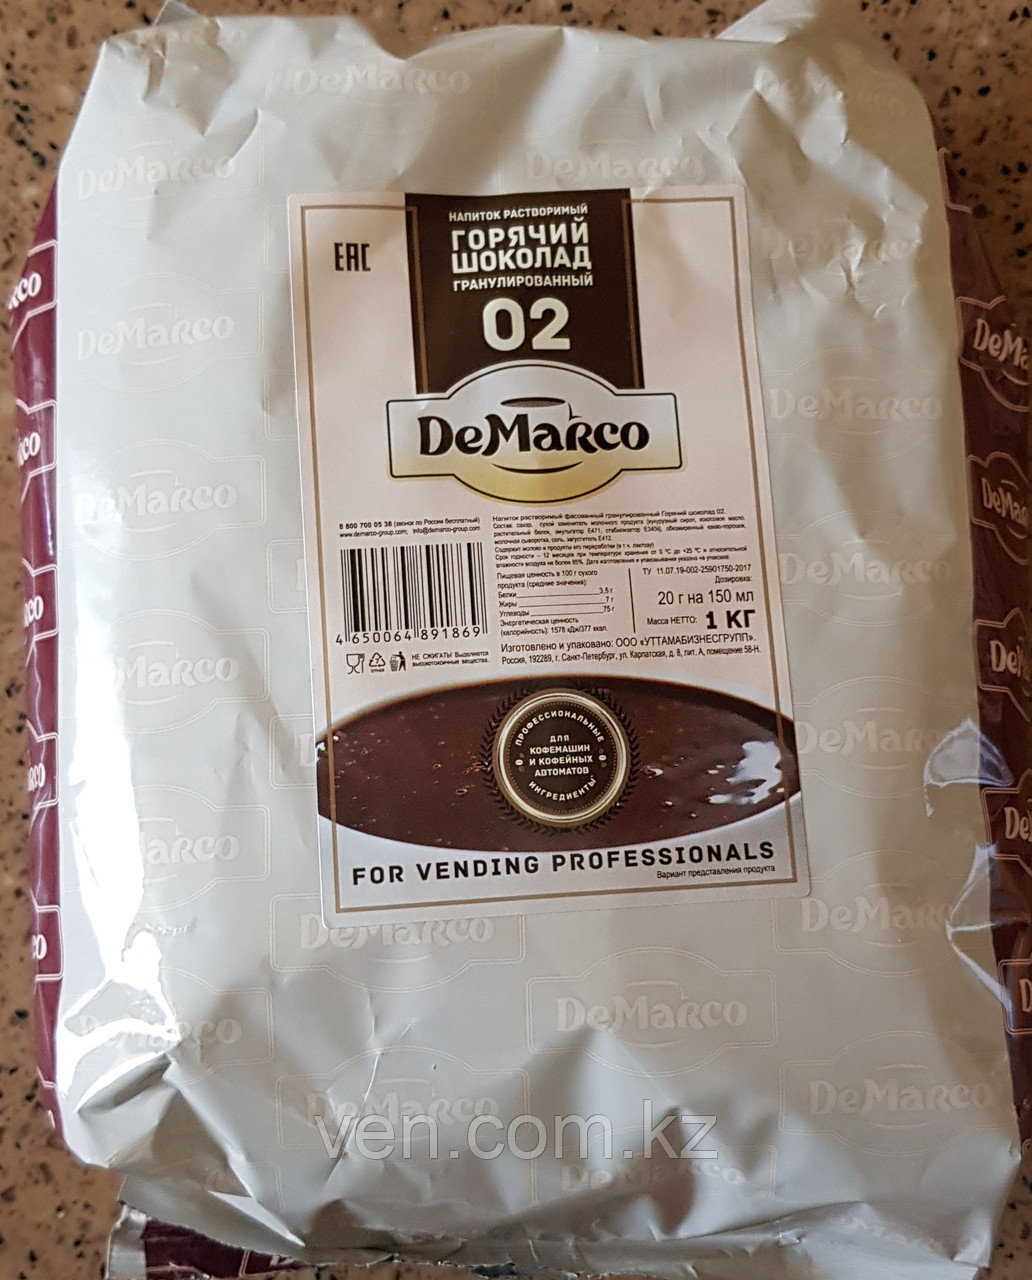 Шоколад De Marco 02 (гранулированный для торговых автоматов)